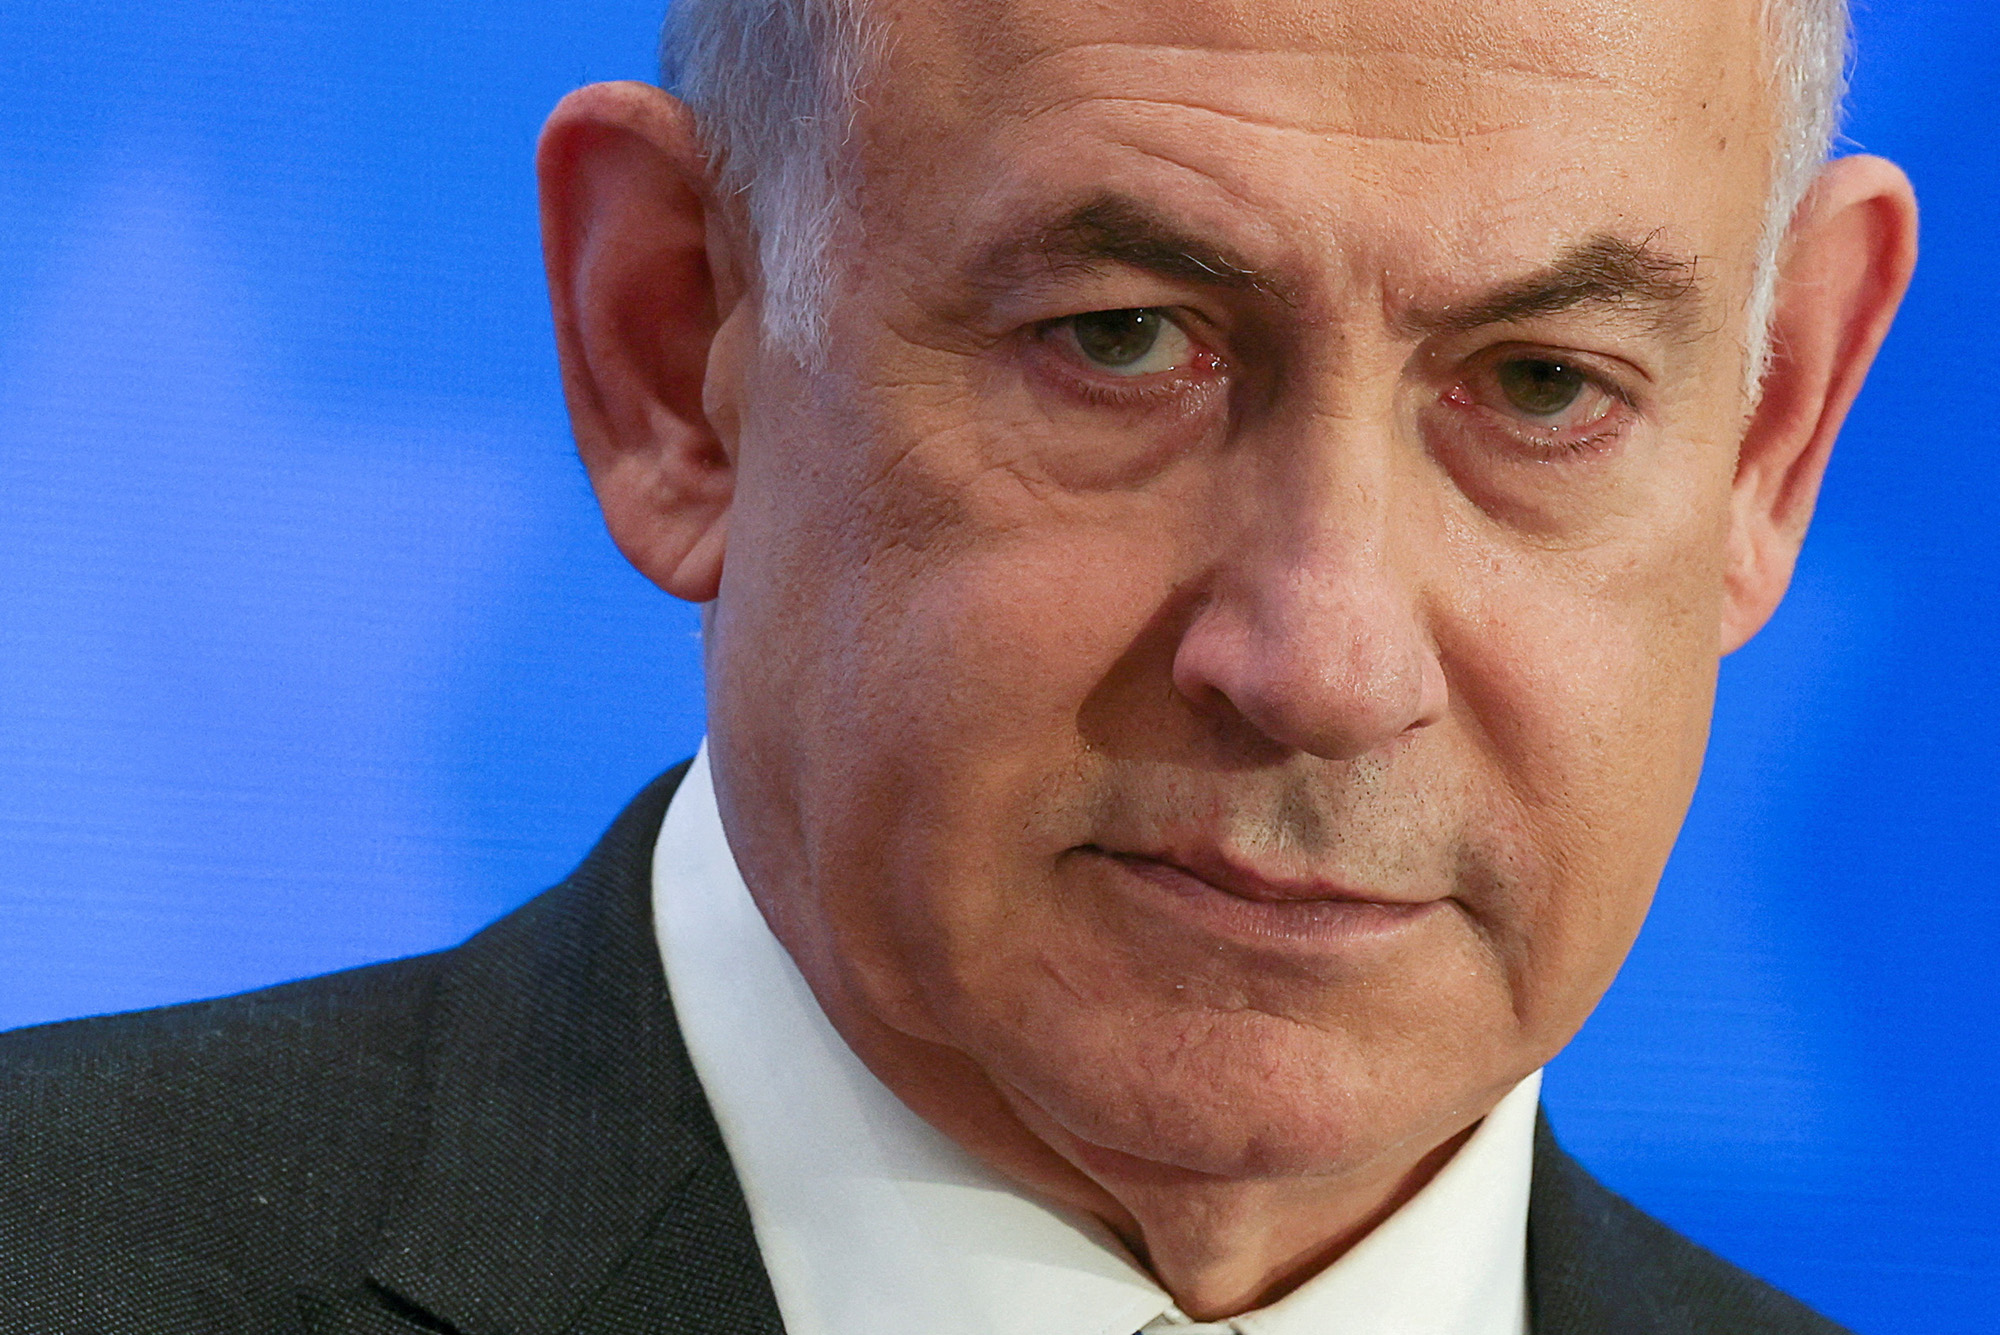 Netanyahu critical of reported US plans to sanction IDF unit